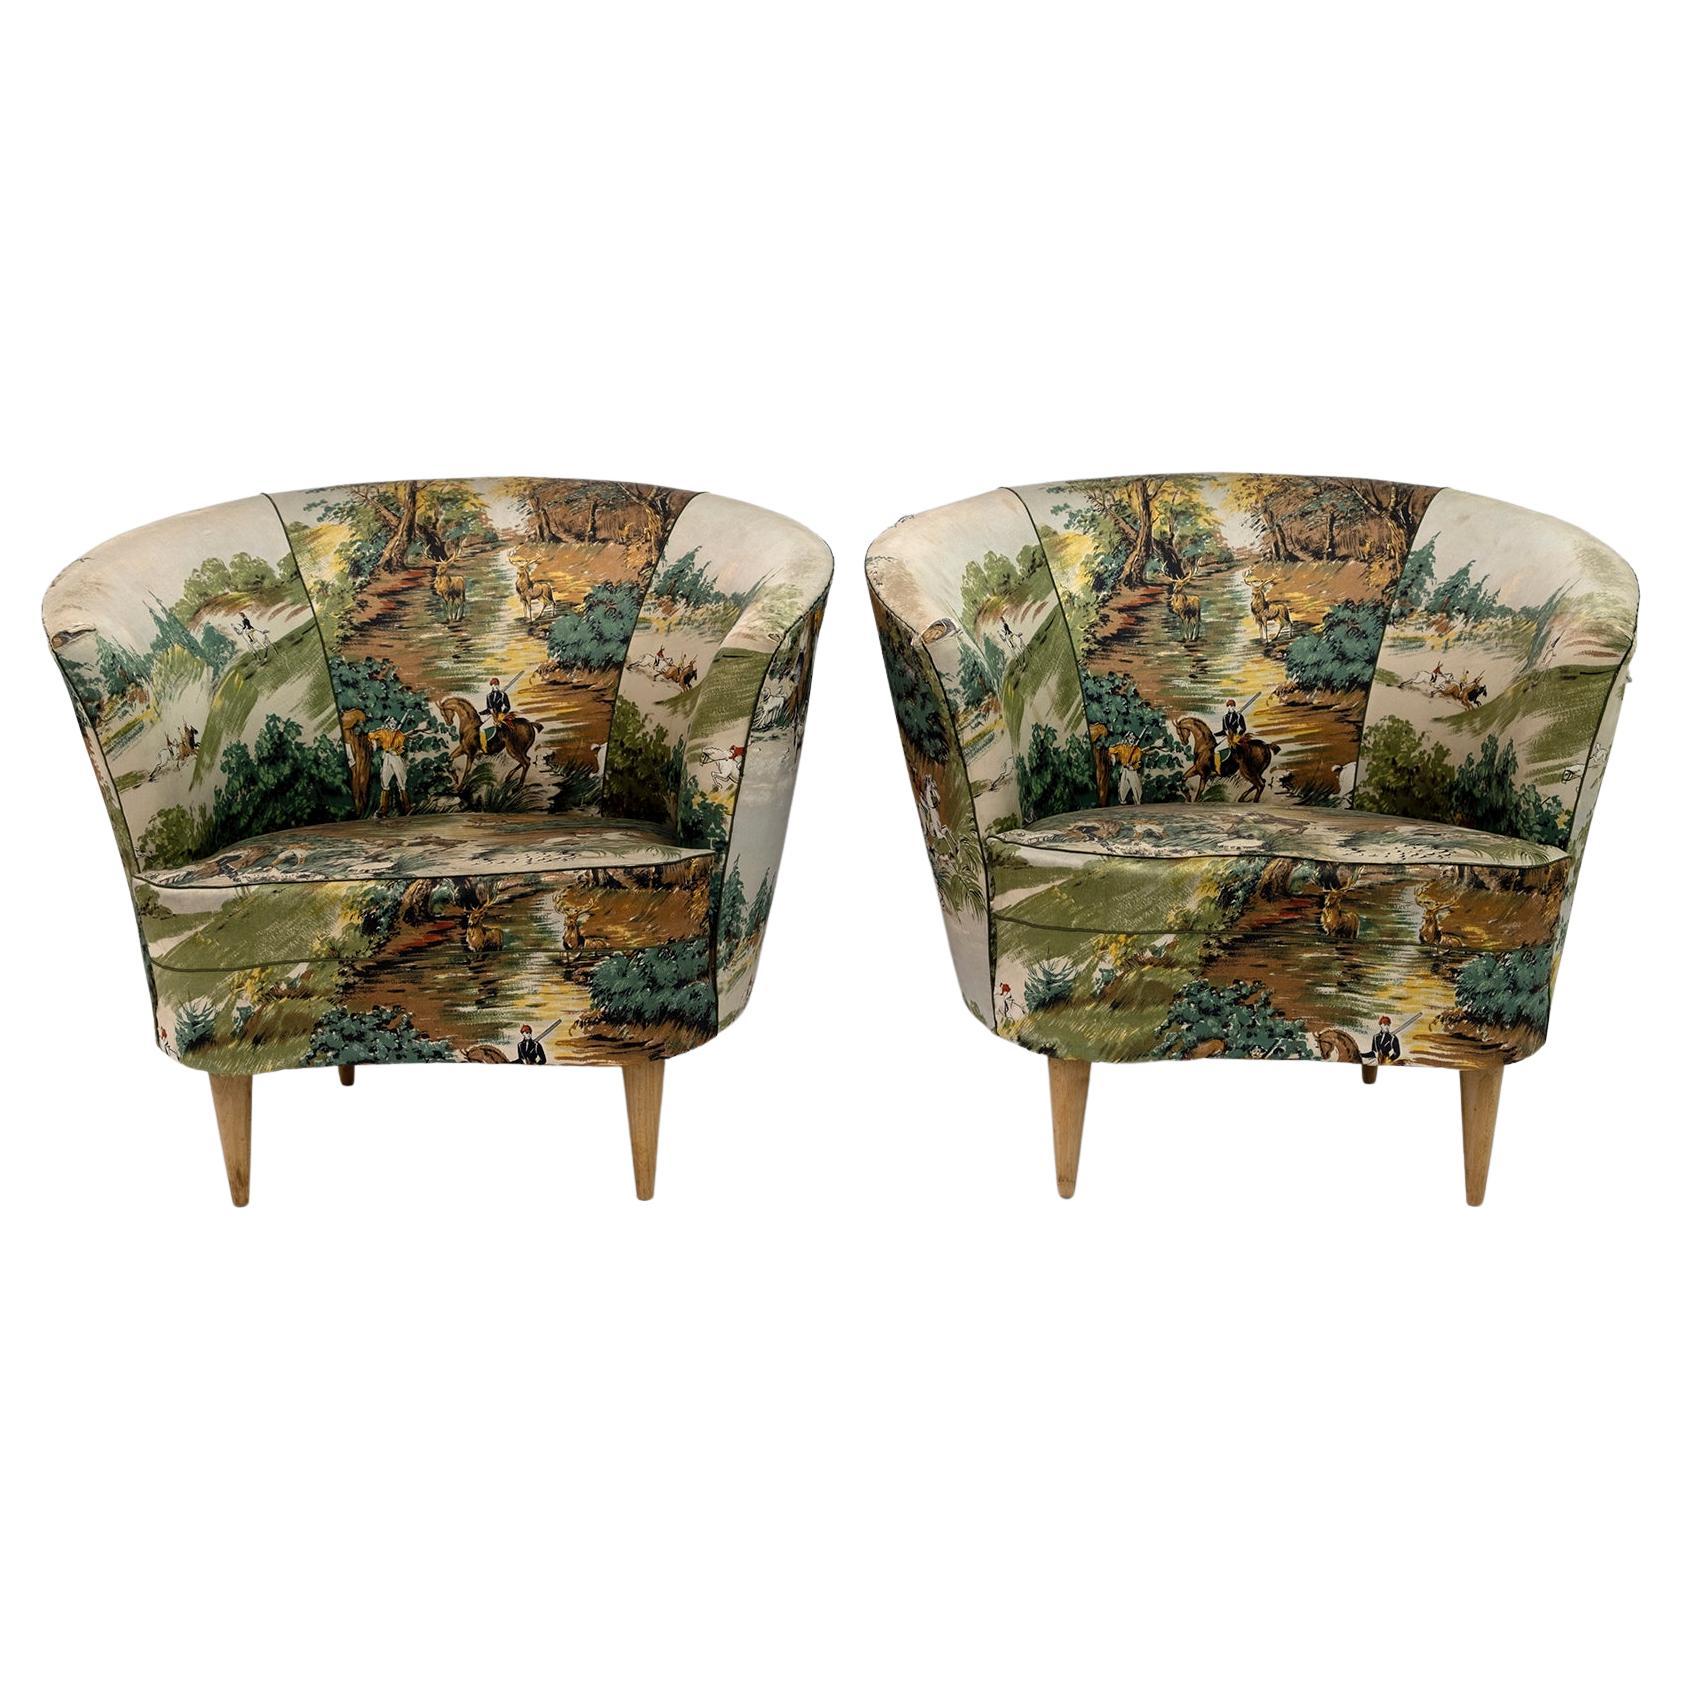 Paire de petits fauteuils italiens Casa e Giardino de style mi-siècle moderne, années 1950